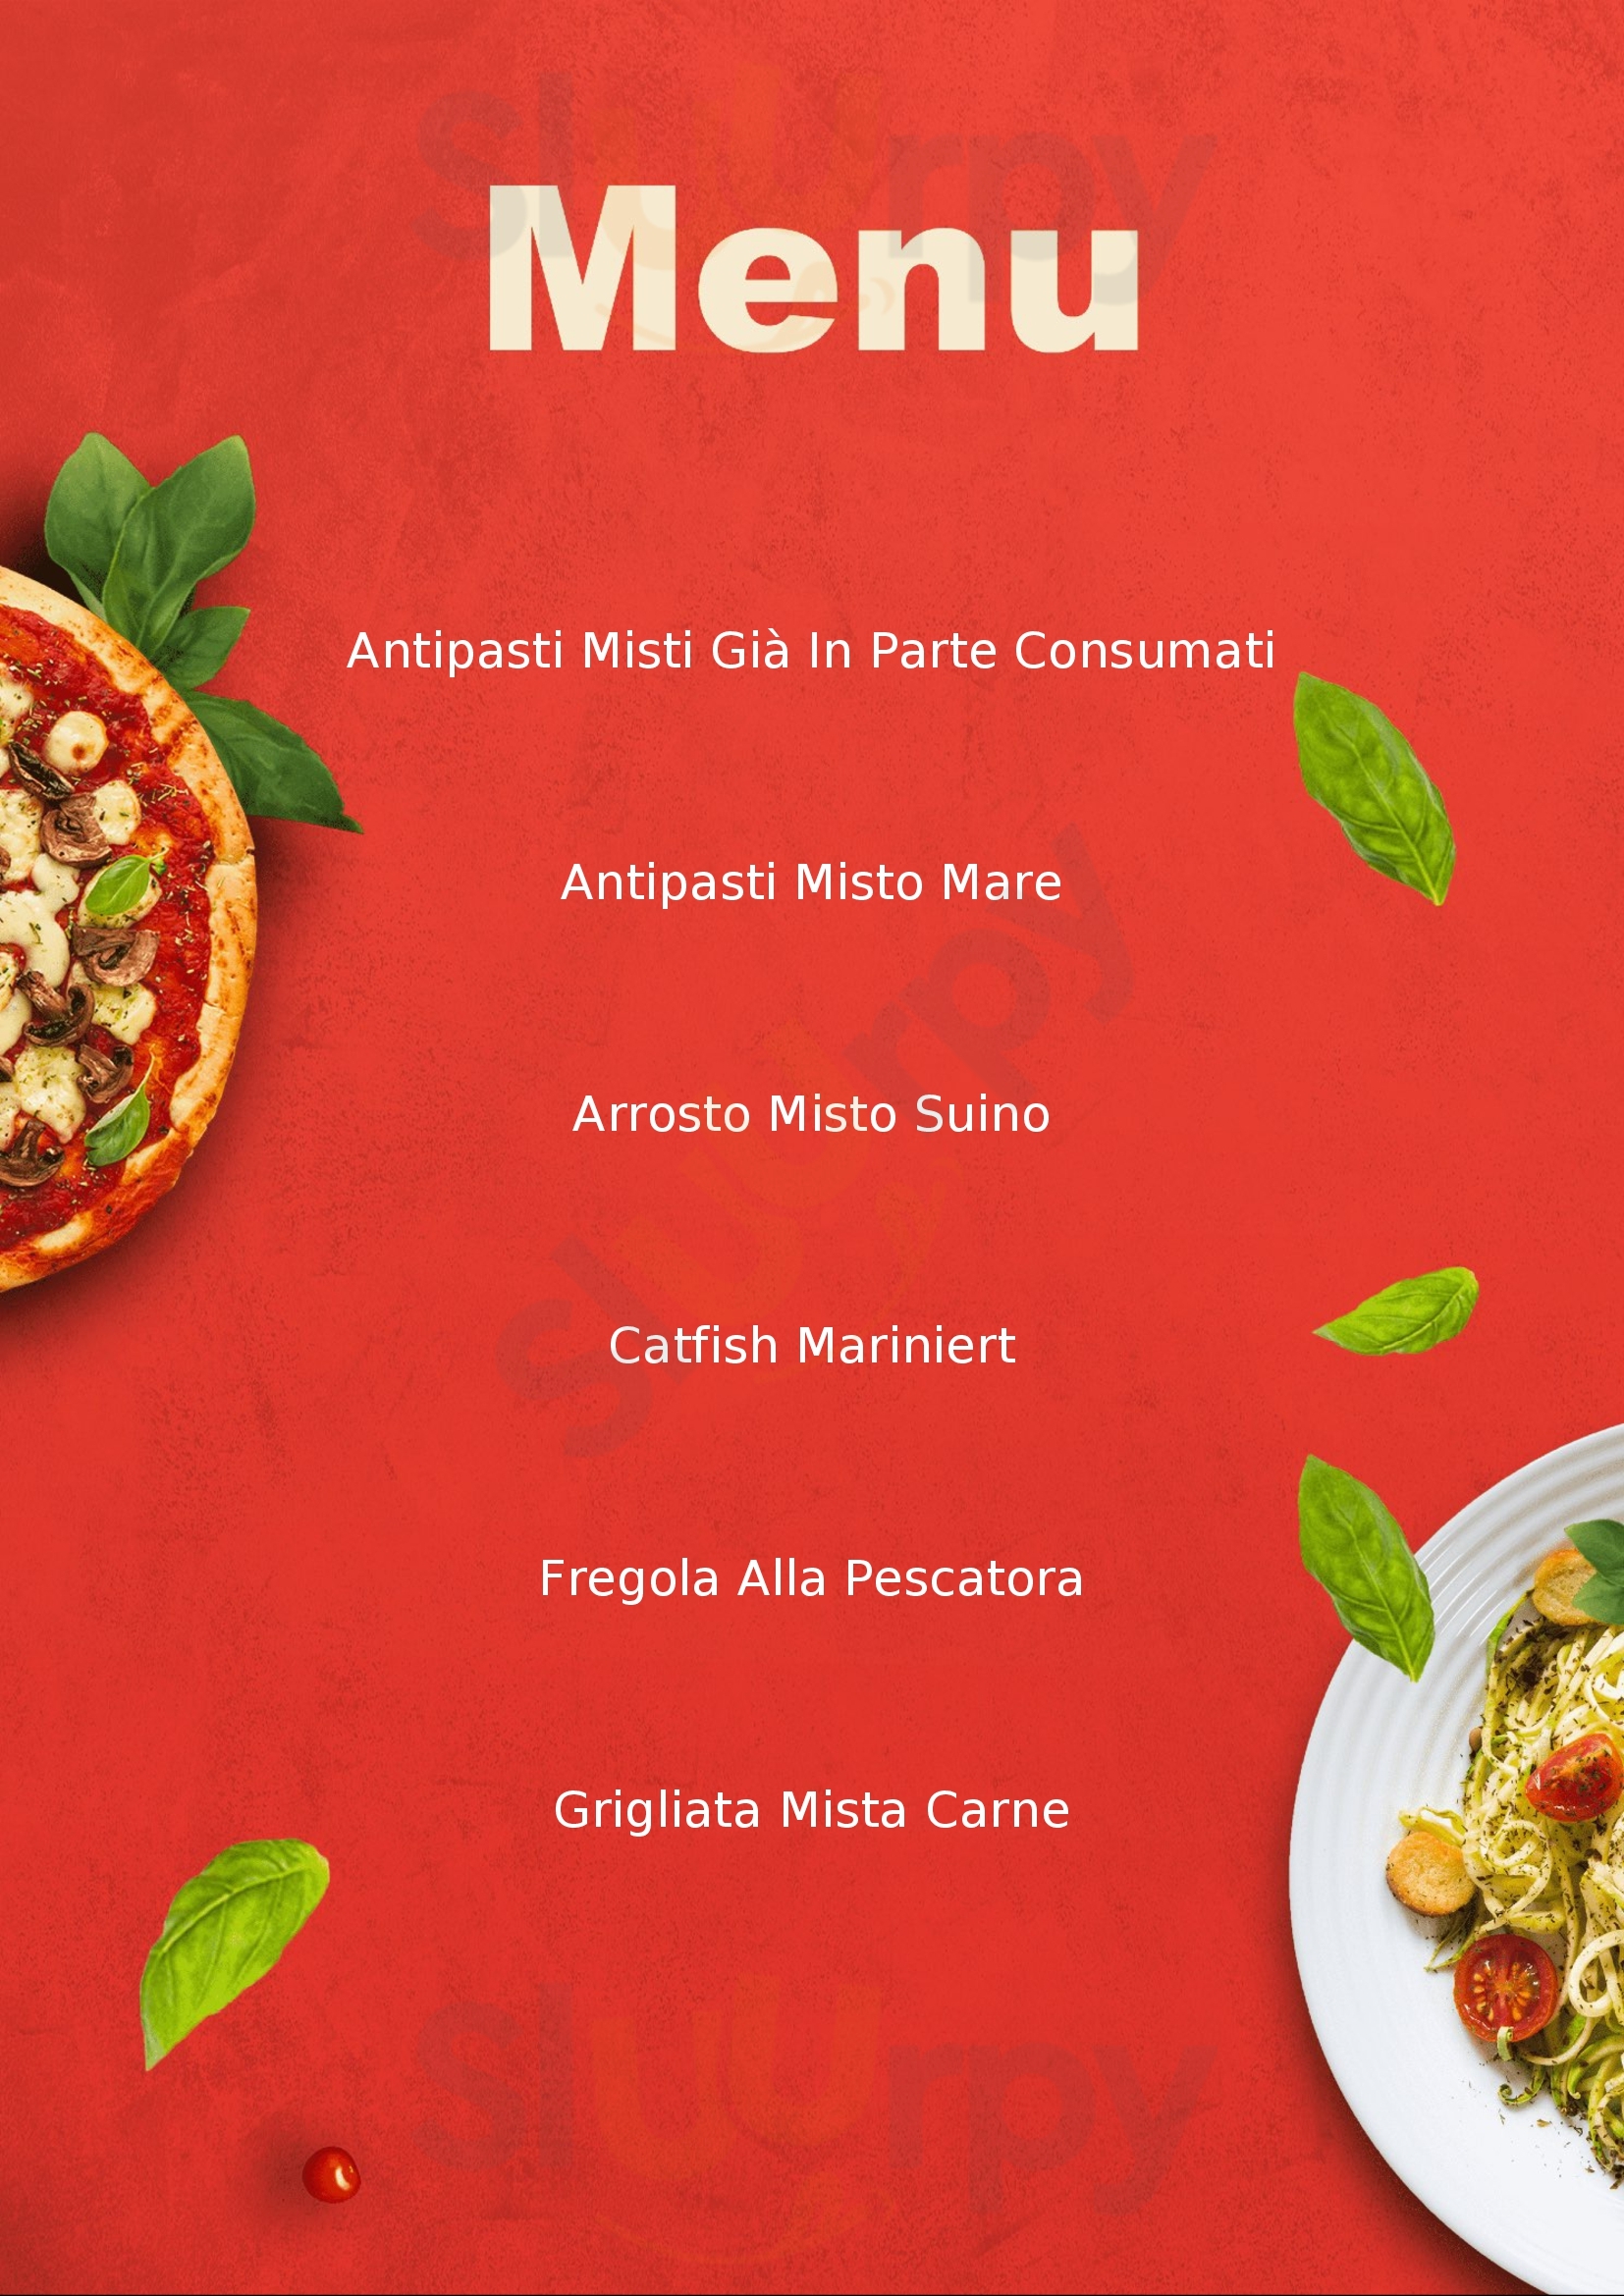 Pezza e pizza Capoterra menù 1 pagina